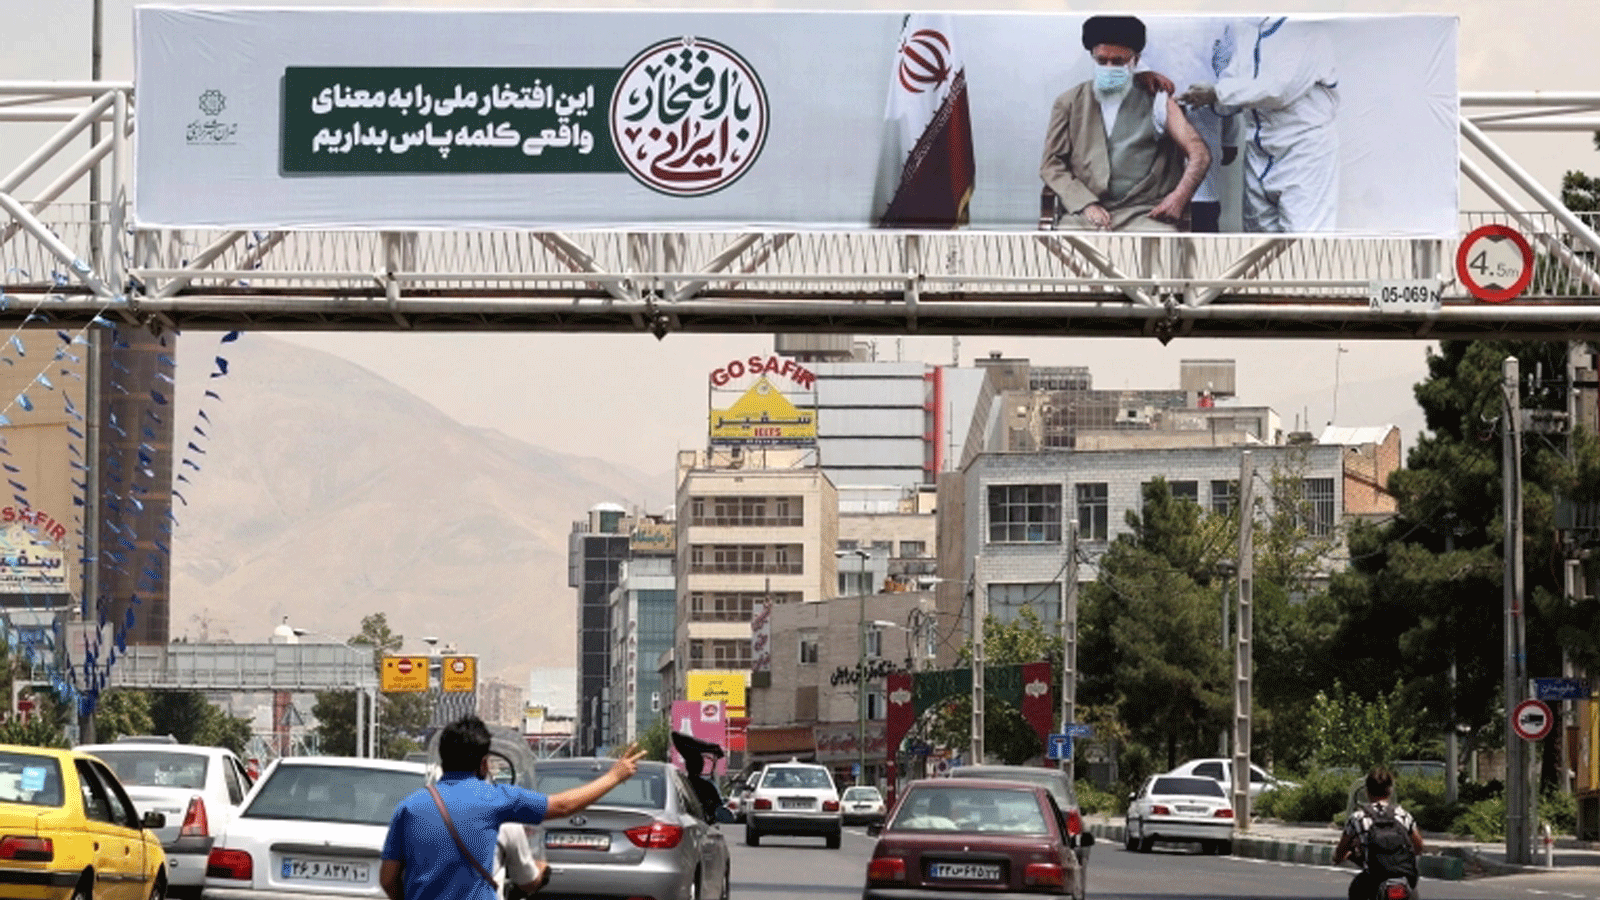 لافتة في شارع في إيرن تُظهر المرشد الأعلى علي حسيني خامنئي وهو يتلقى لقاح كوفيد. 20 تموز/ يوليو 2021